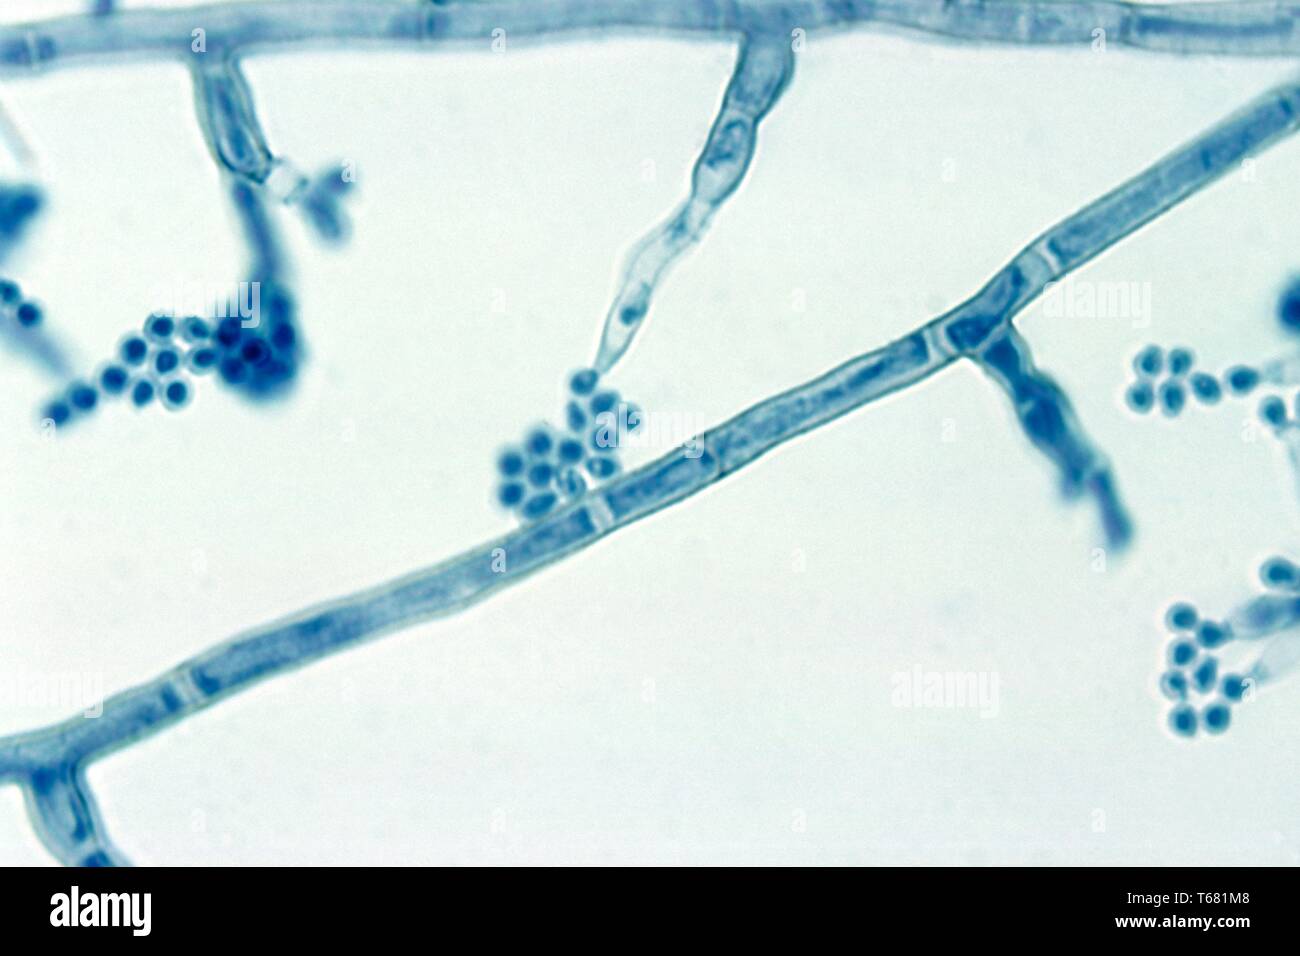 La fotomicrografia del phialides con terminale conidi del Madurella mycetomatis fungo, 1961. Immagine cortesia di centri per il controllo e la prevenzione delle malattie (CDC) / Dr Lucille K. Georg. () Foto Stock